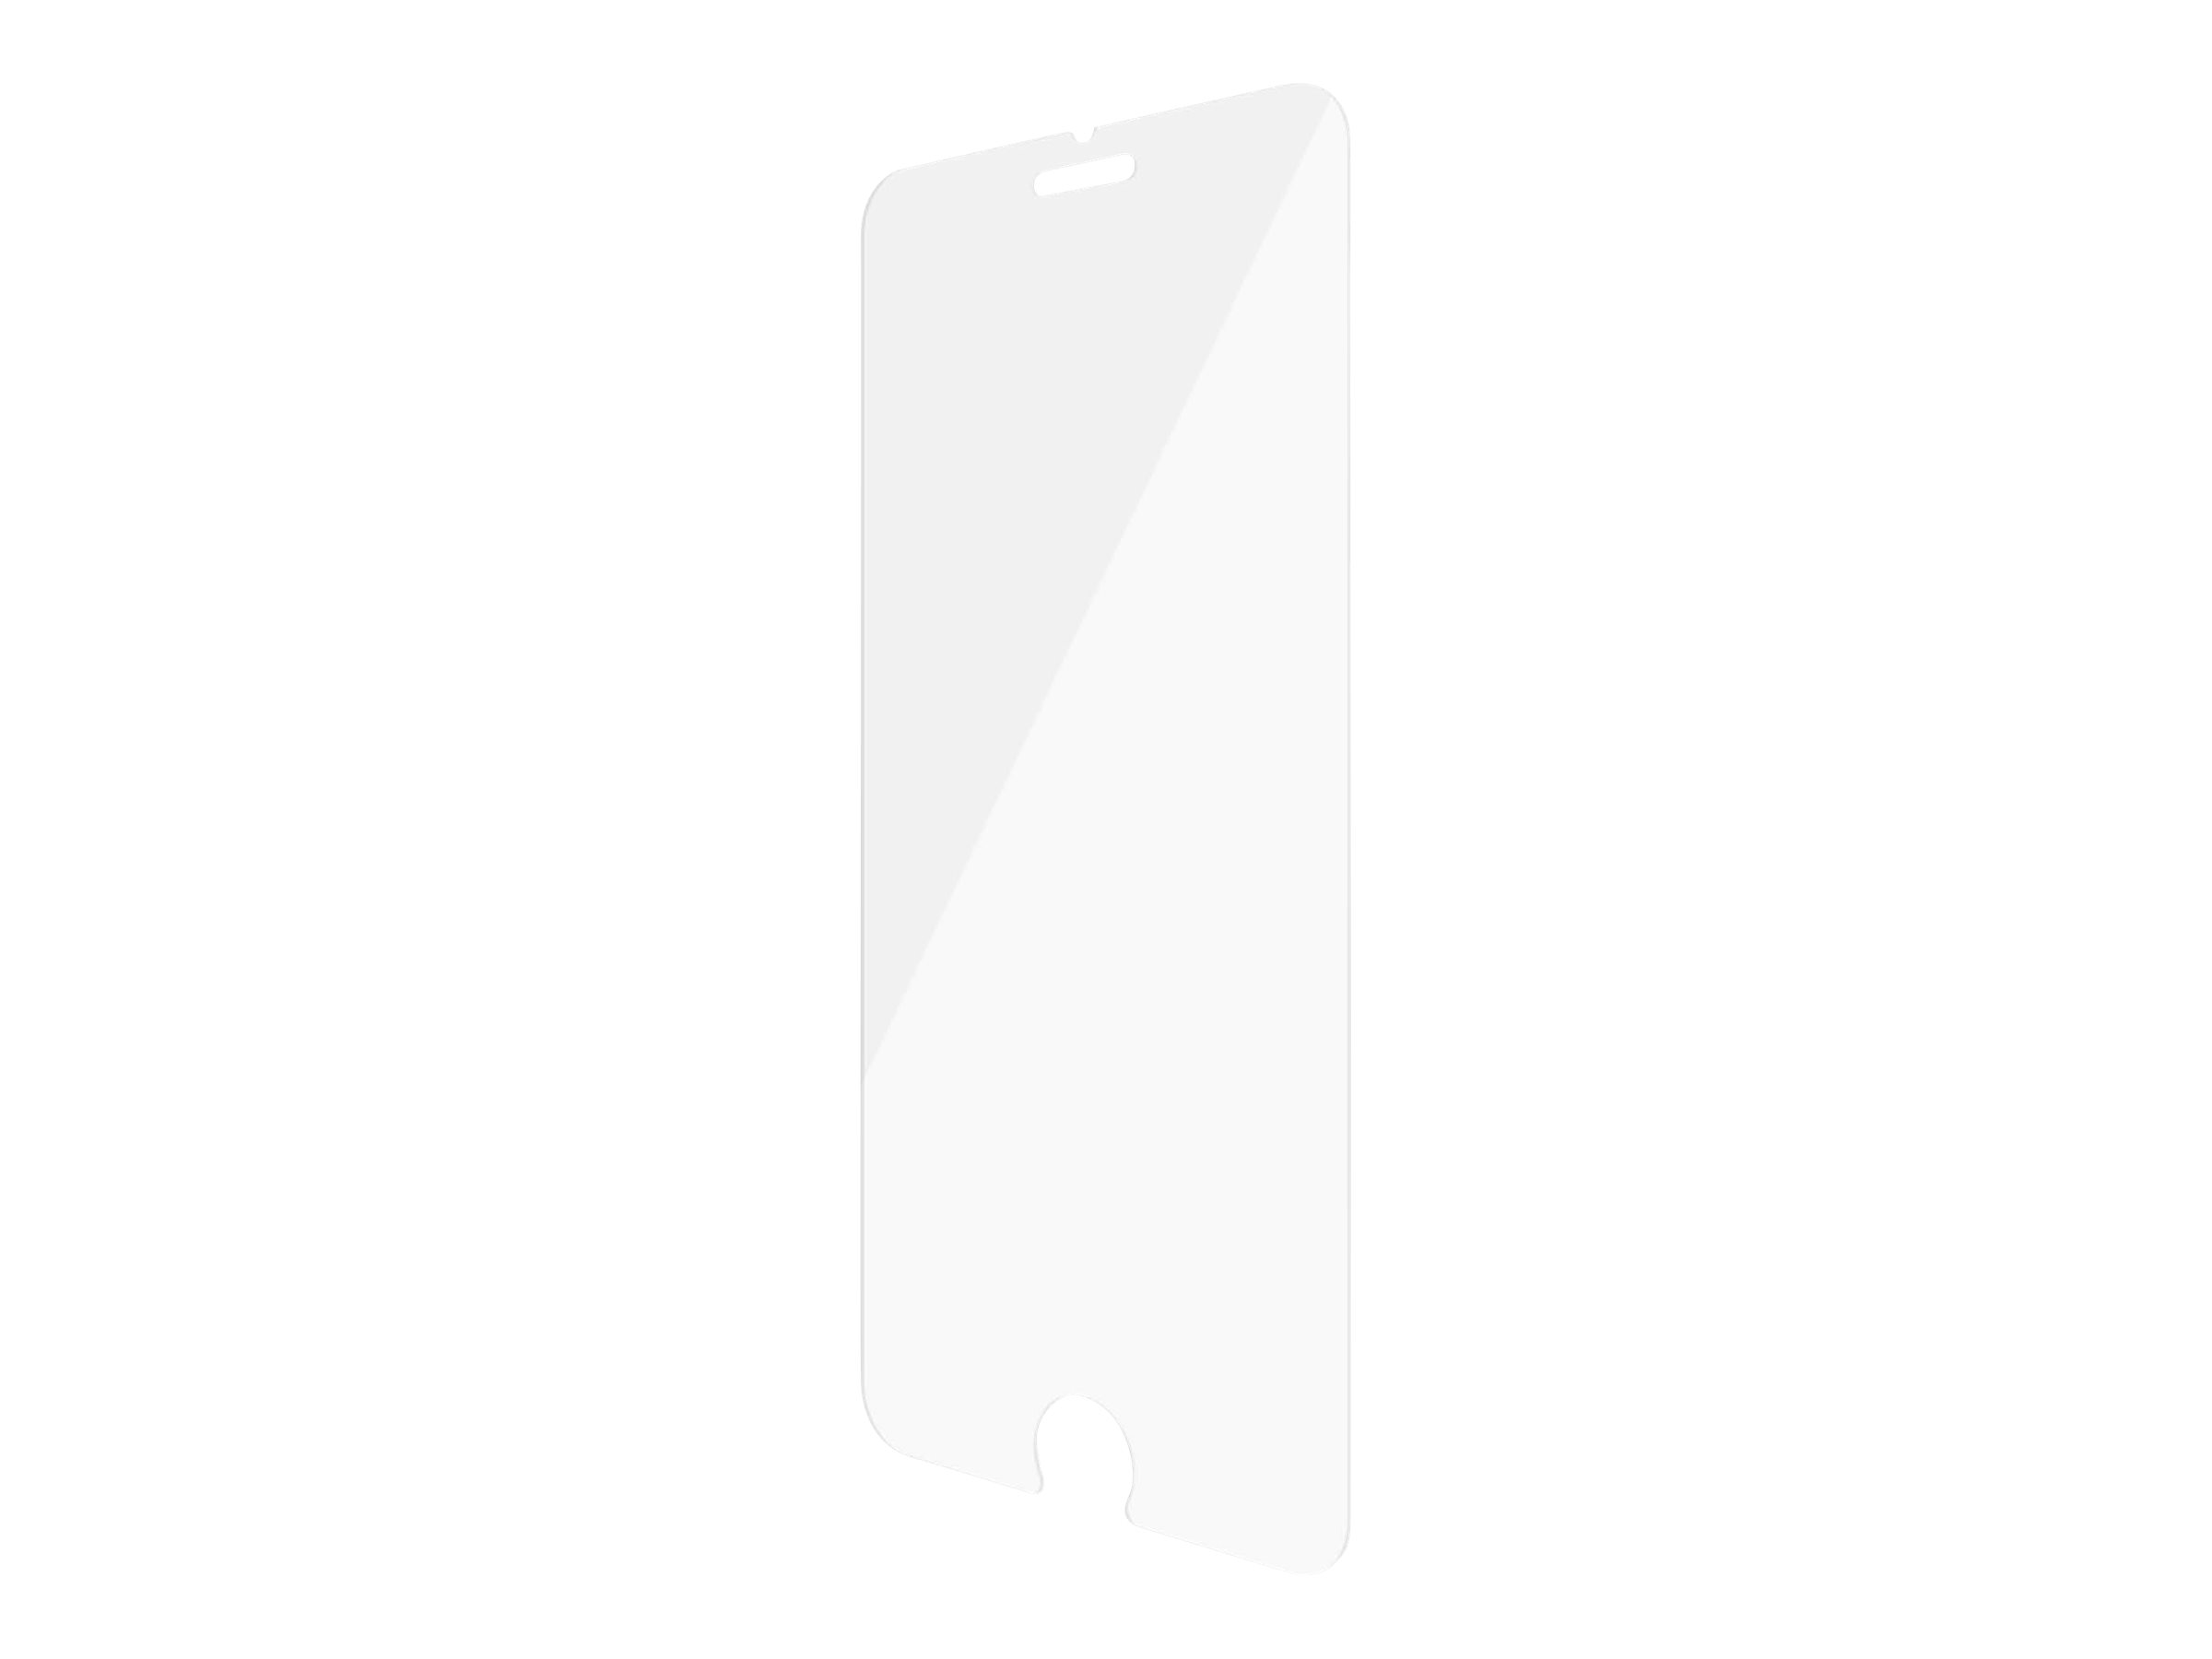 PanzerGlass Original - Bildschirmschutz - kristallklar - für Apple iPhone 6, 6s, 7, 8, SE 2nd generation (2684)